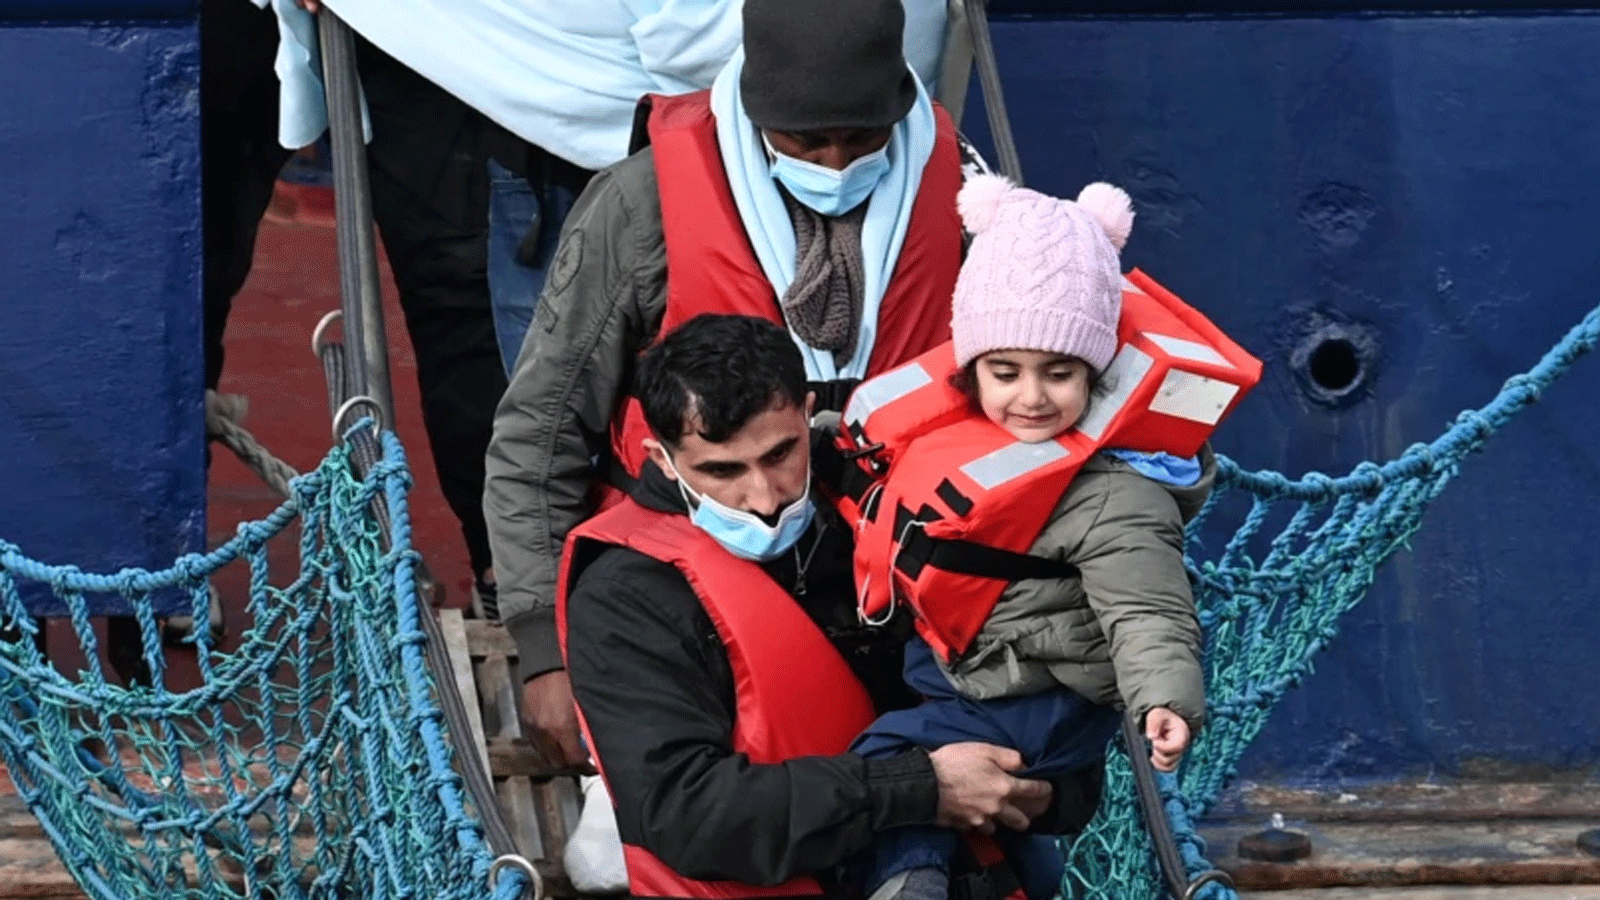 إنقاذ لاجئين لدى وصولهم الى دوفر في جنوب انكلترا 